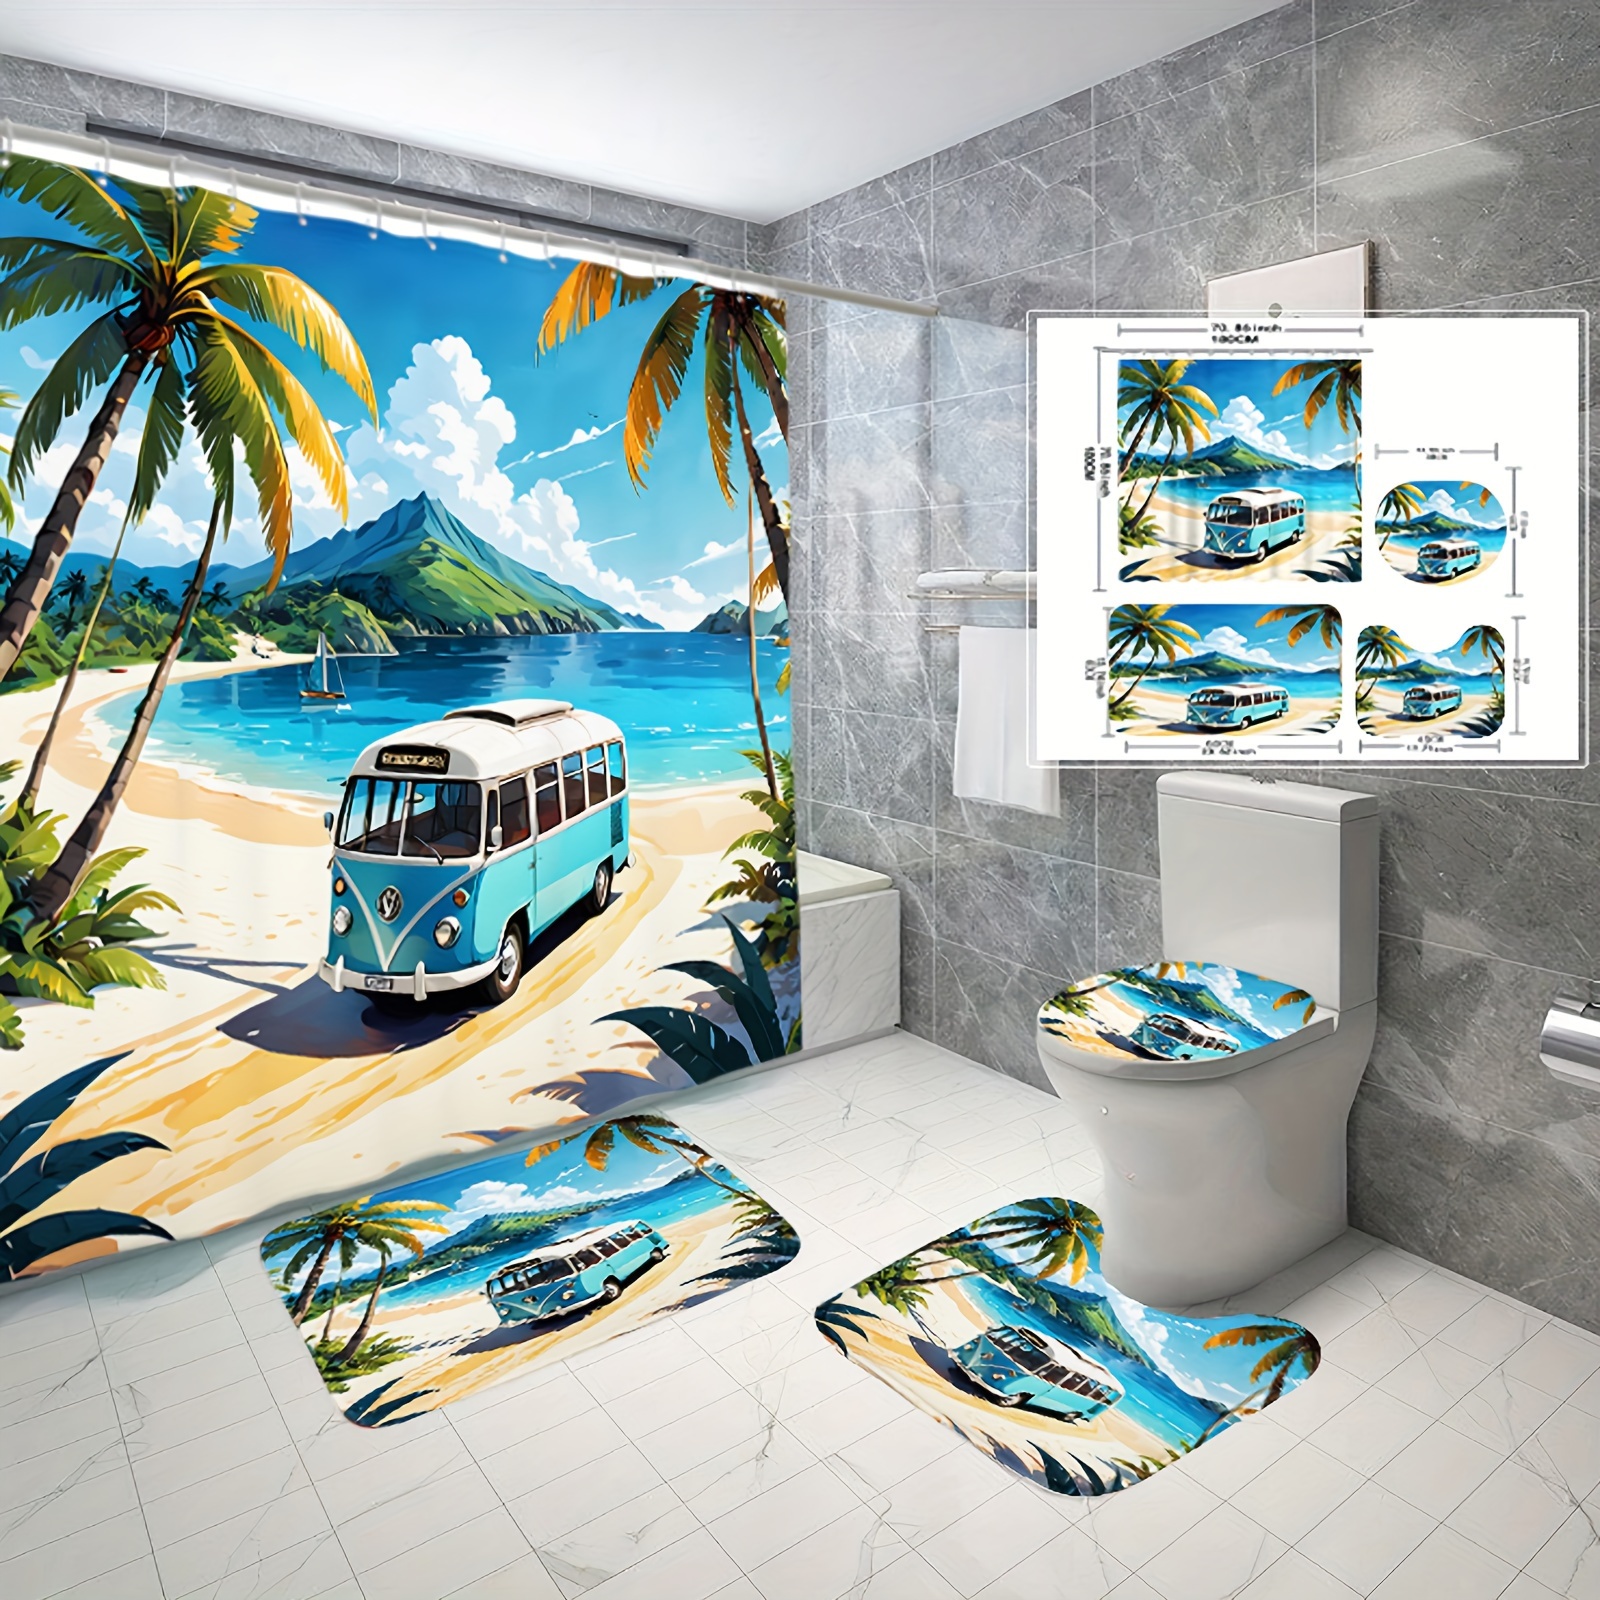 

1/3/4pcs Seaside Bus Digital Printed Waterproof Shower Curtain And Carpet, Modern Home Bathroom Decor Shower Curtain With Carpet And Toilet Lid